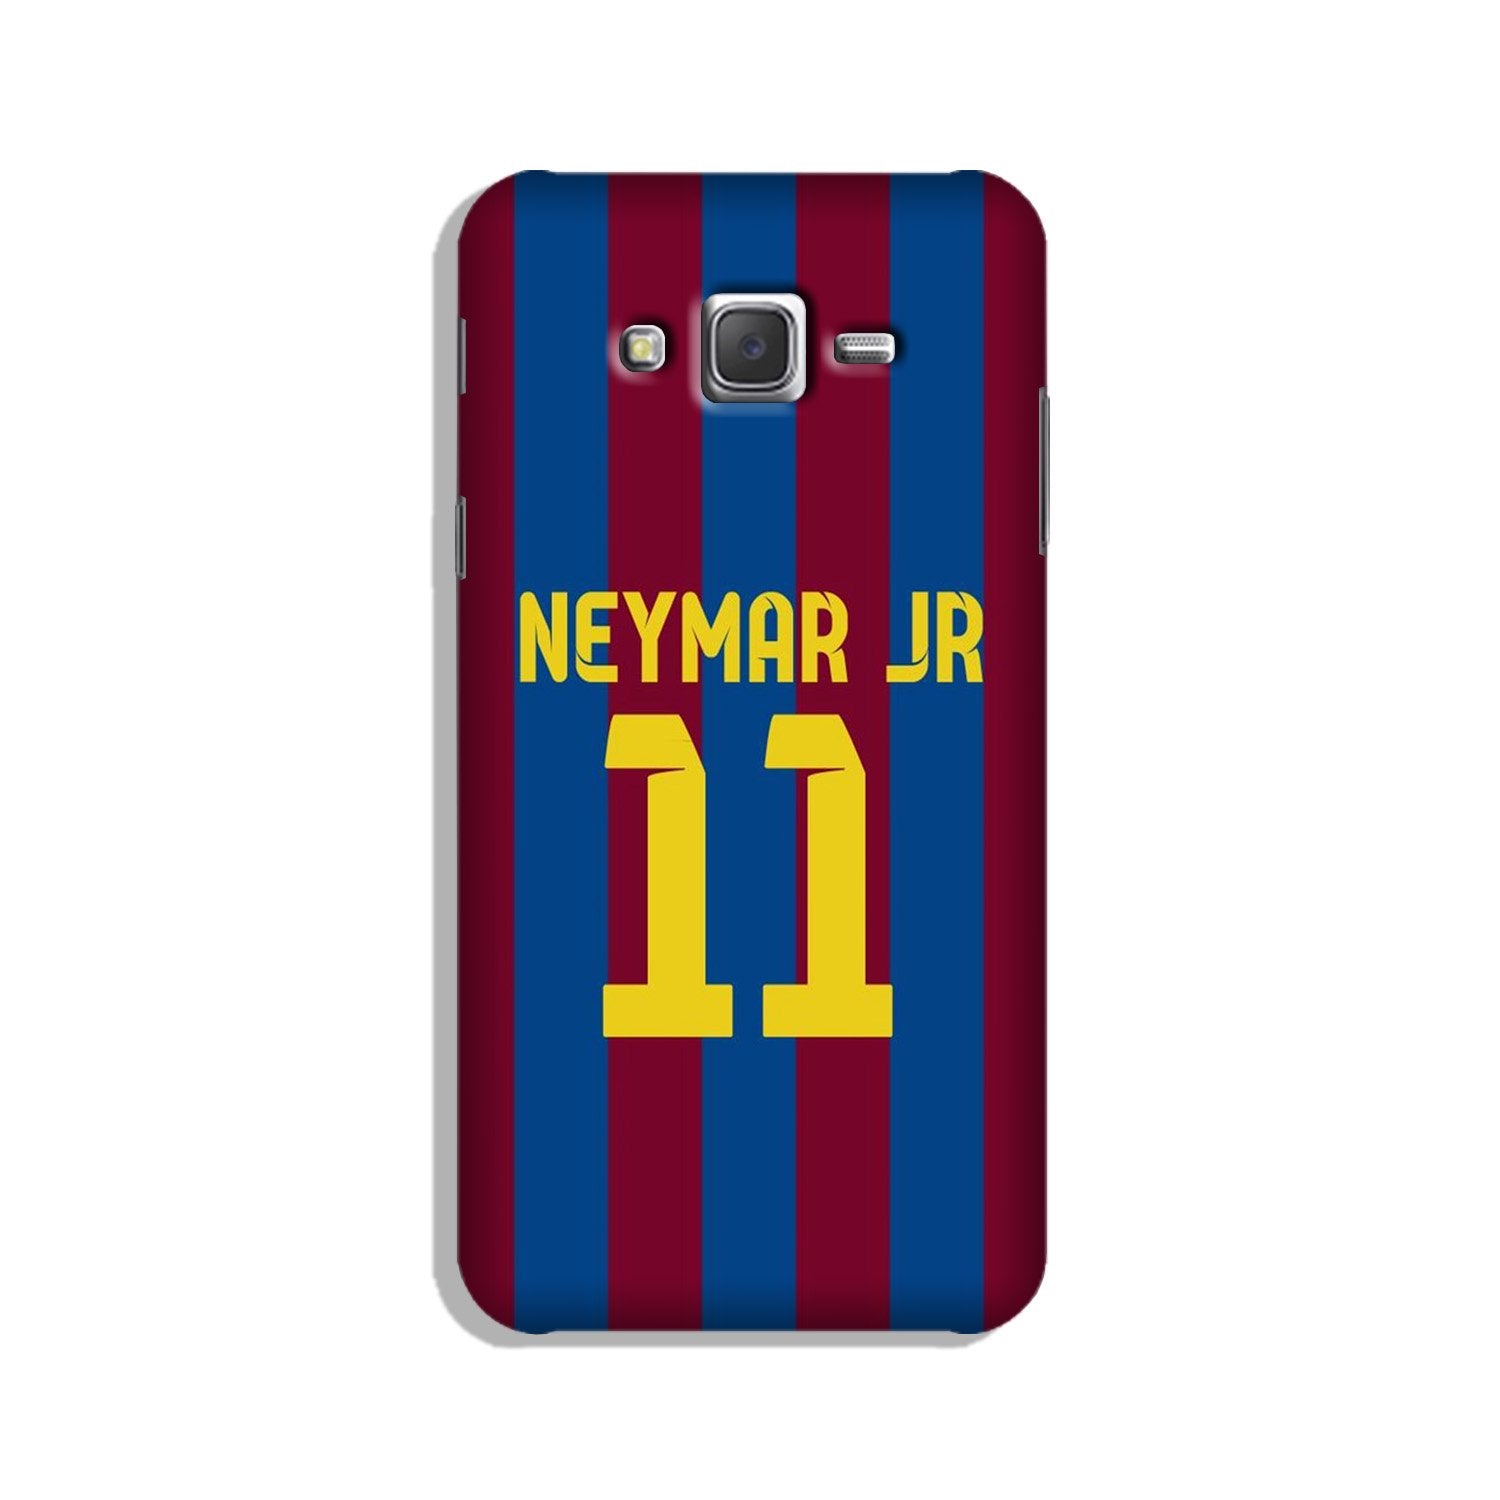 Neymar Jr Case for Galaxy J7 (2015)(Design - 162)